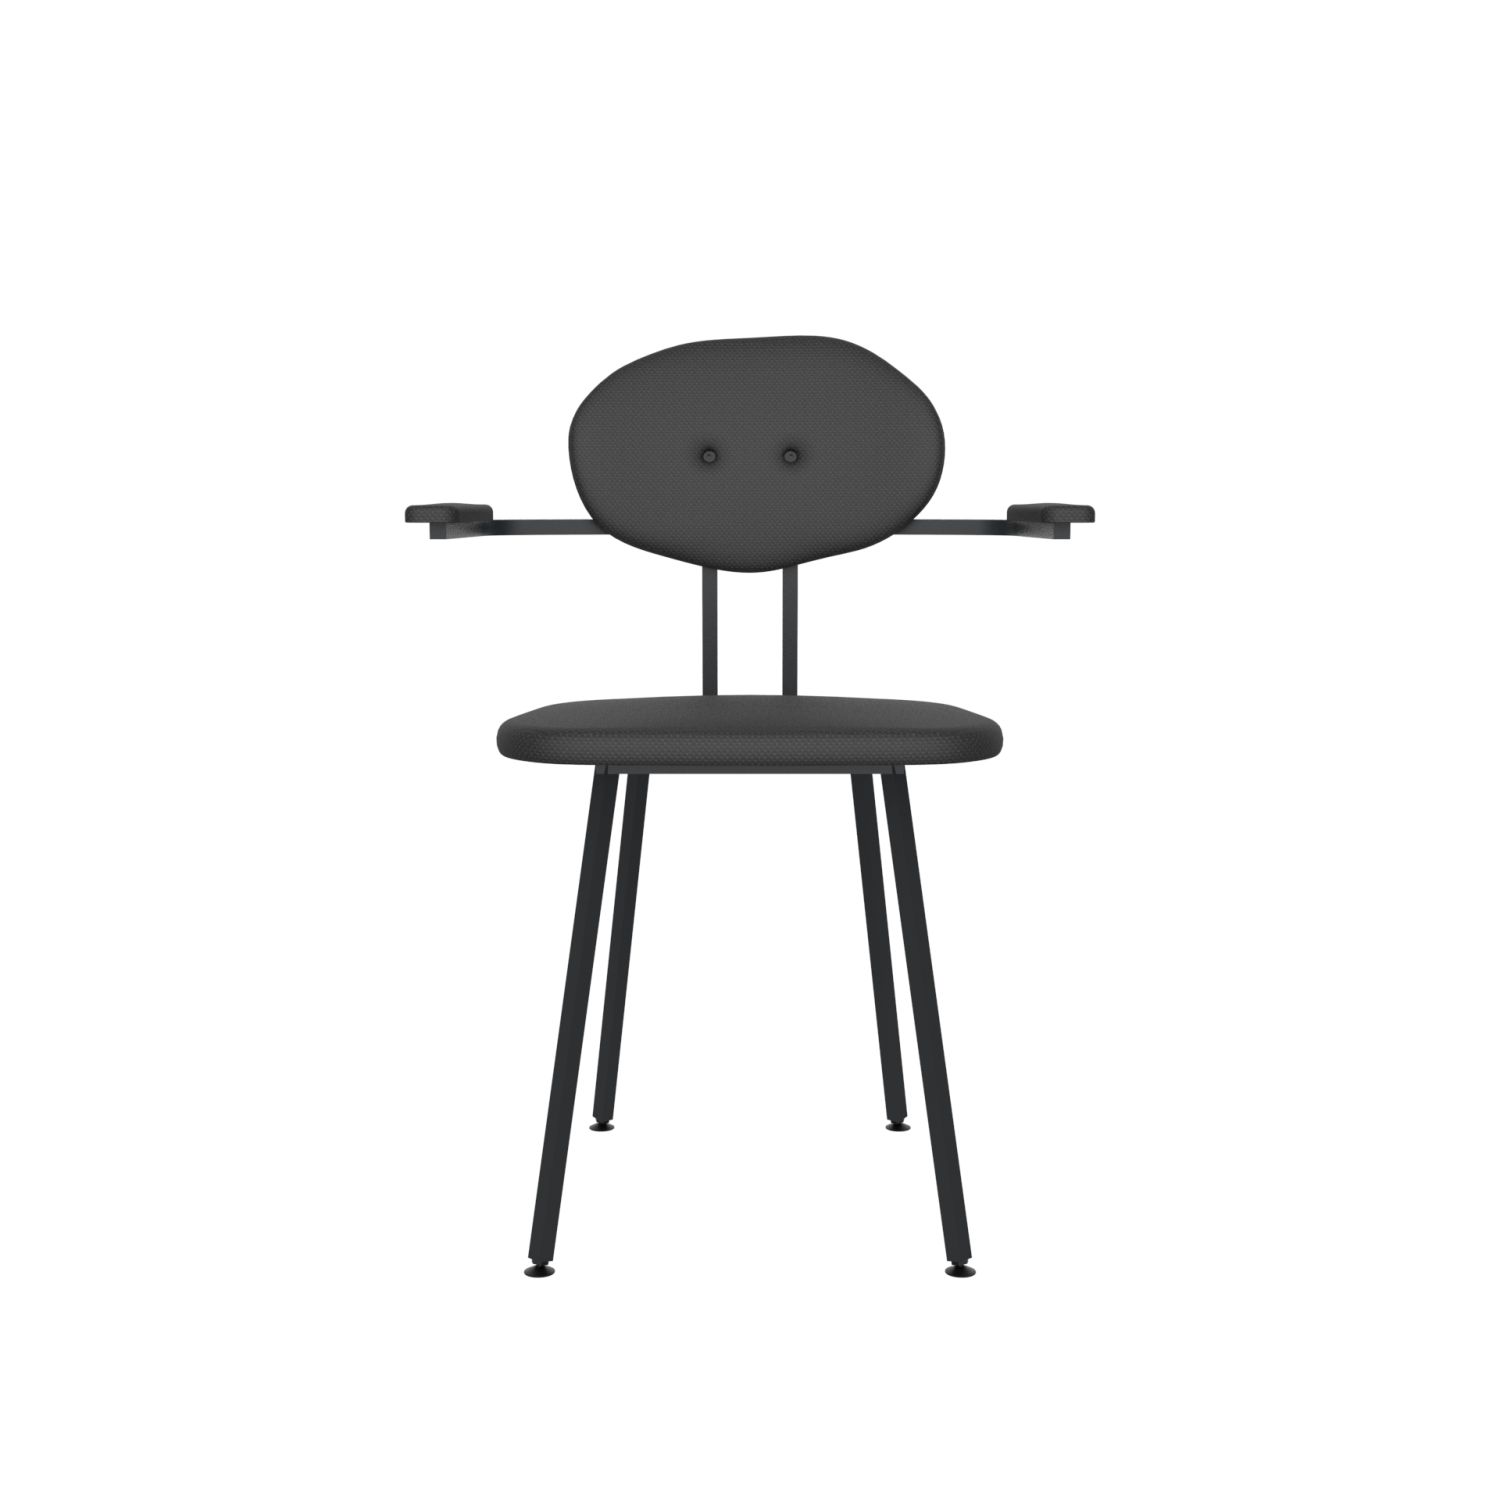 lensvelt maarten baas chair 102 not stackable with armrests backrest d havana black 090 black ral9005 hard leg ends